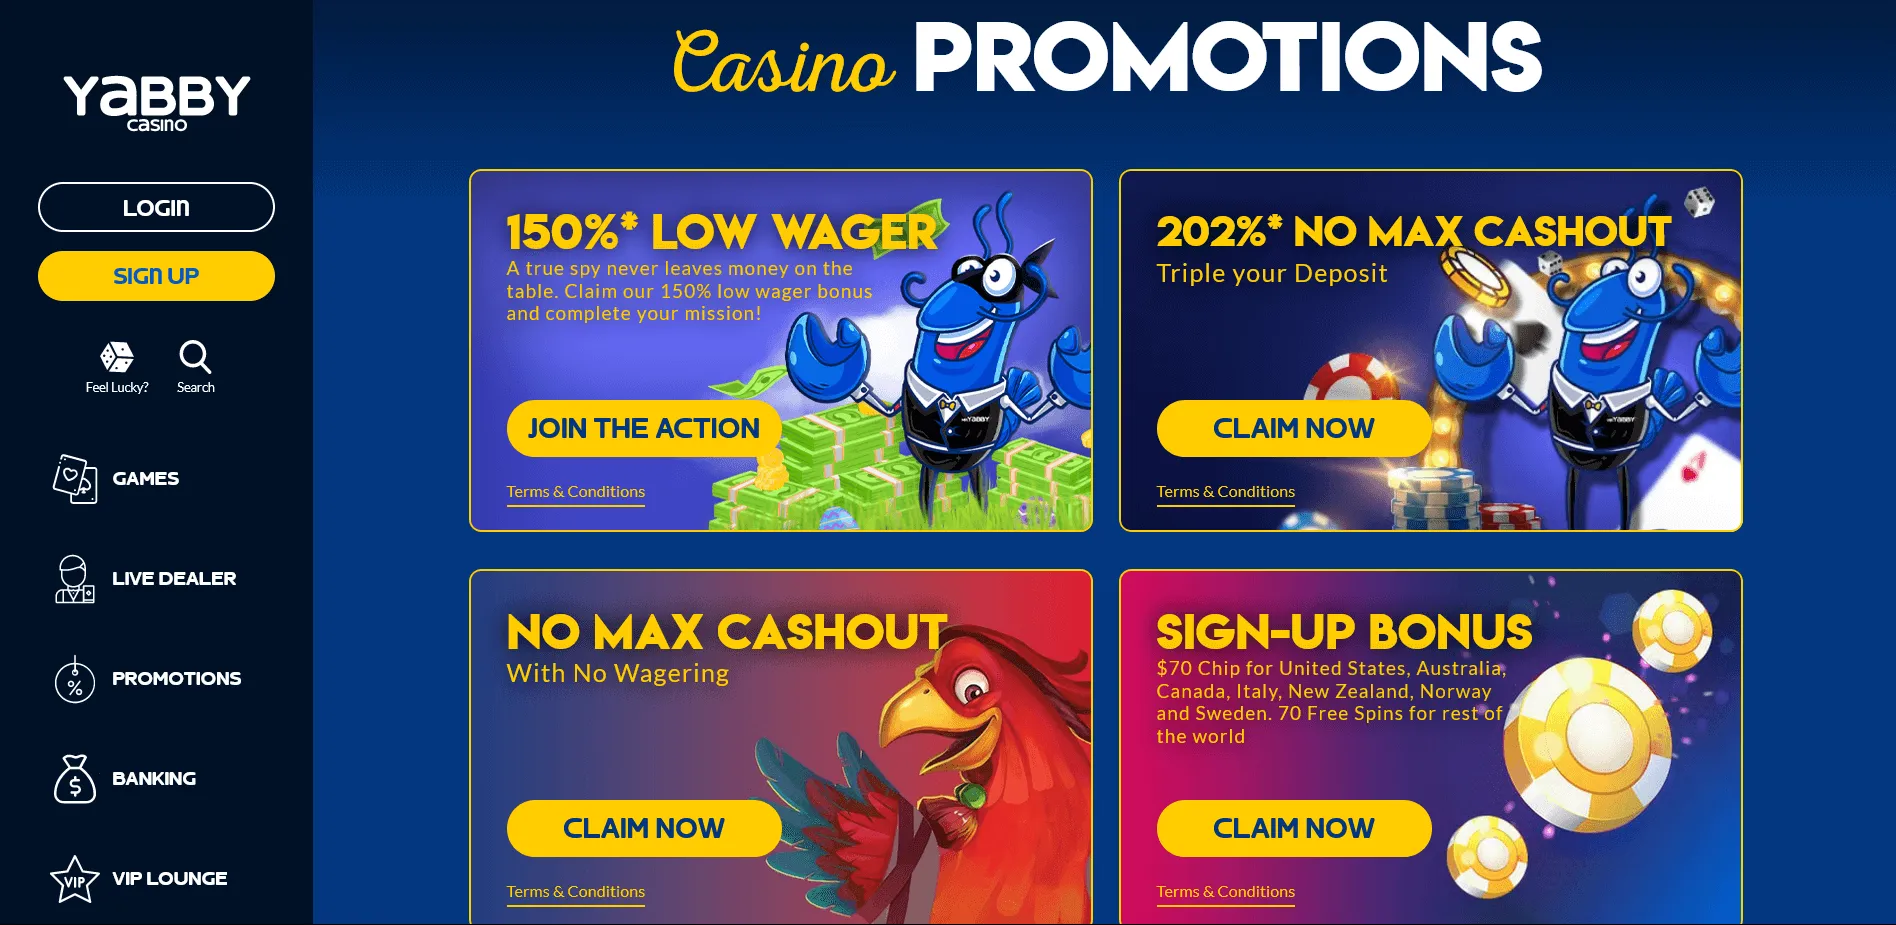 Welkomstbonus en Promoties bij Yabby Casino: Grootte van Bonussen. Het Loyaliteitsprogramma